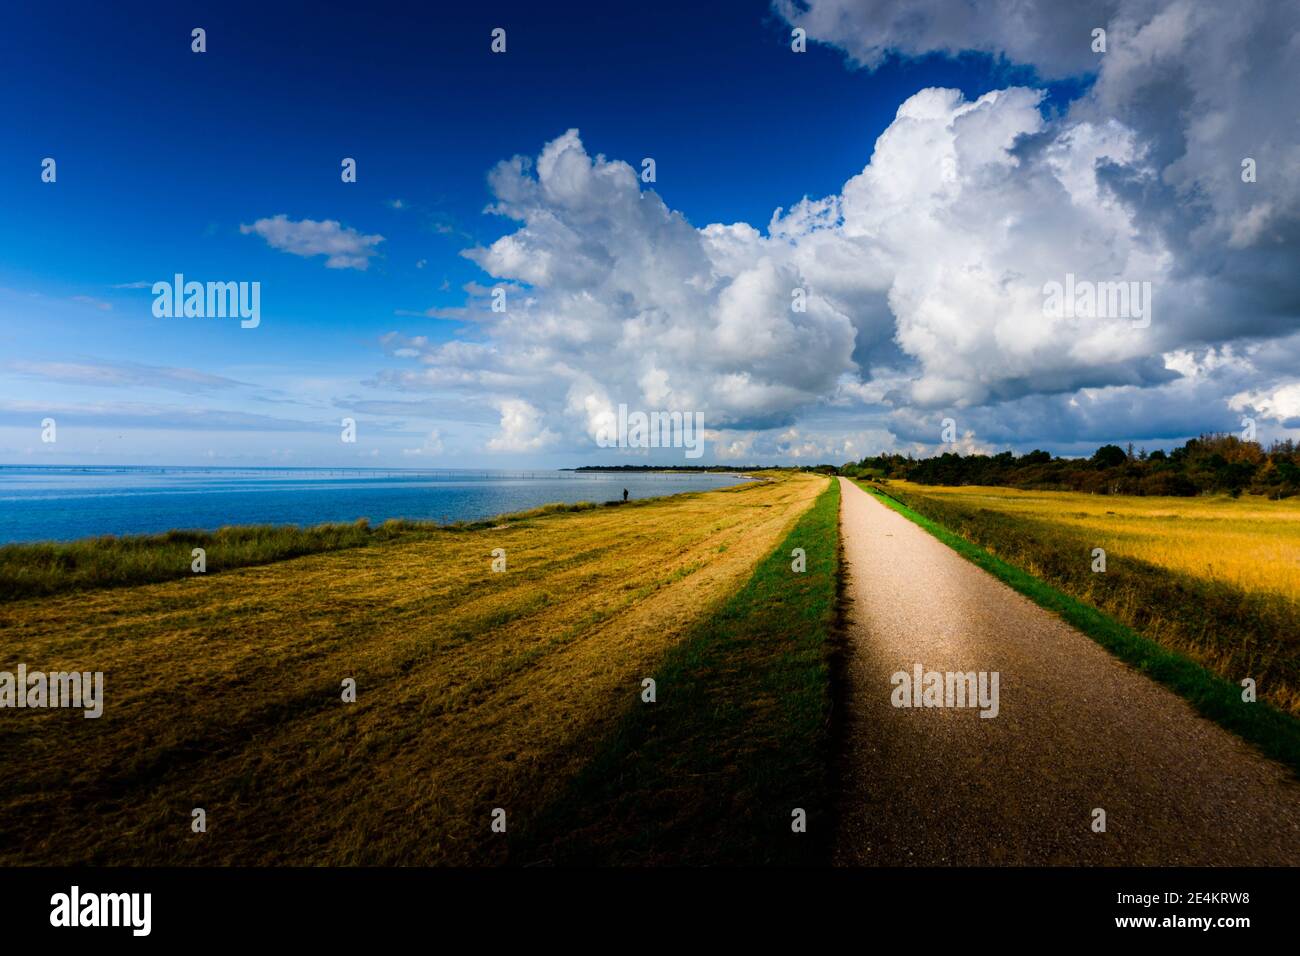 Passeggiata di sabbia al mar baltico vicino al campo giallo in Danimarca Foto Stock